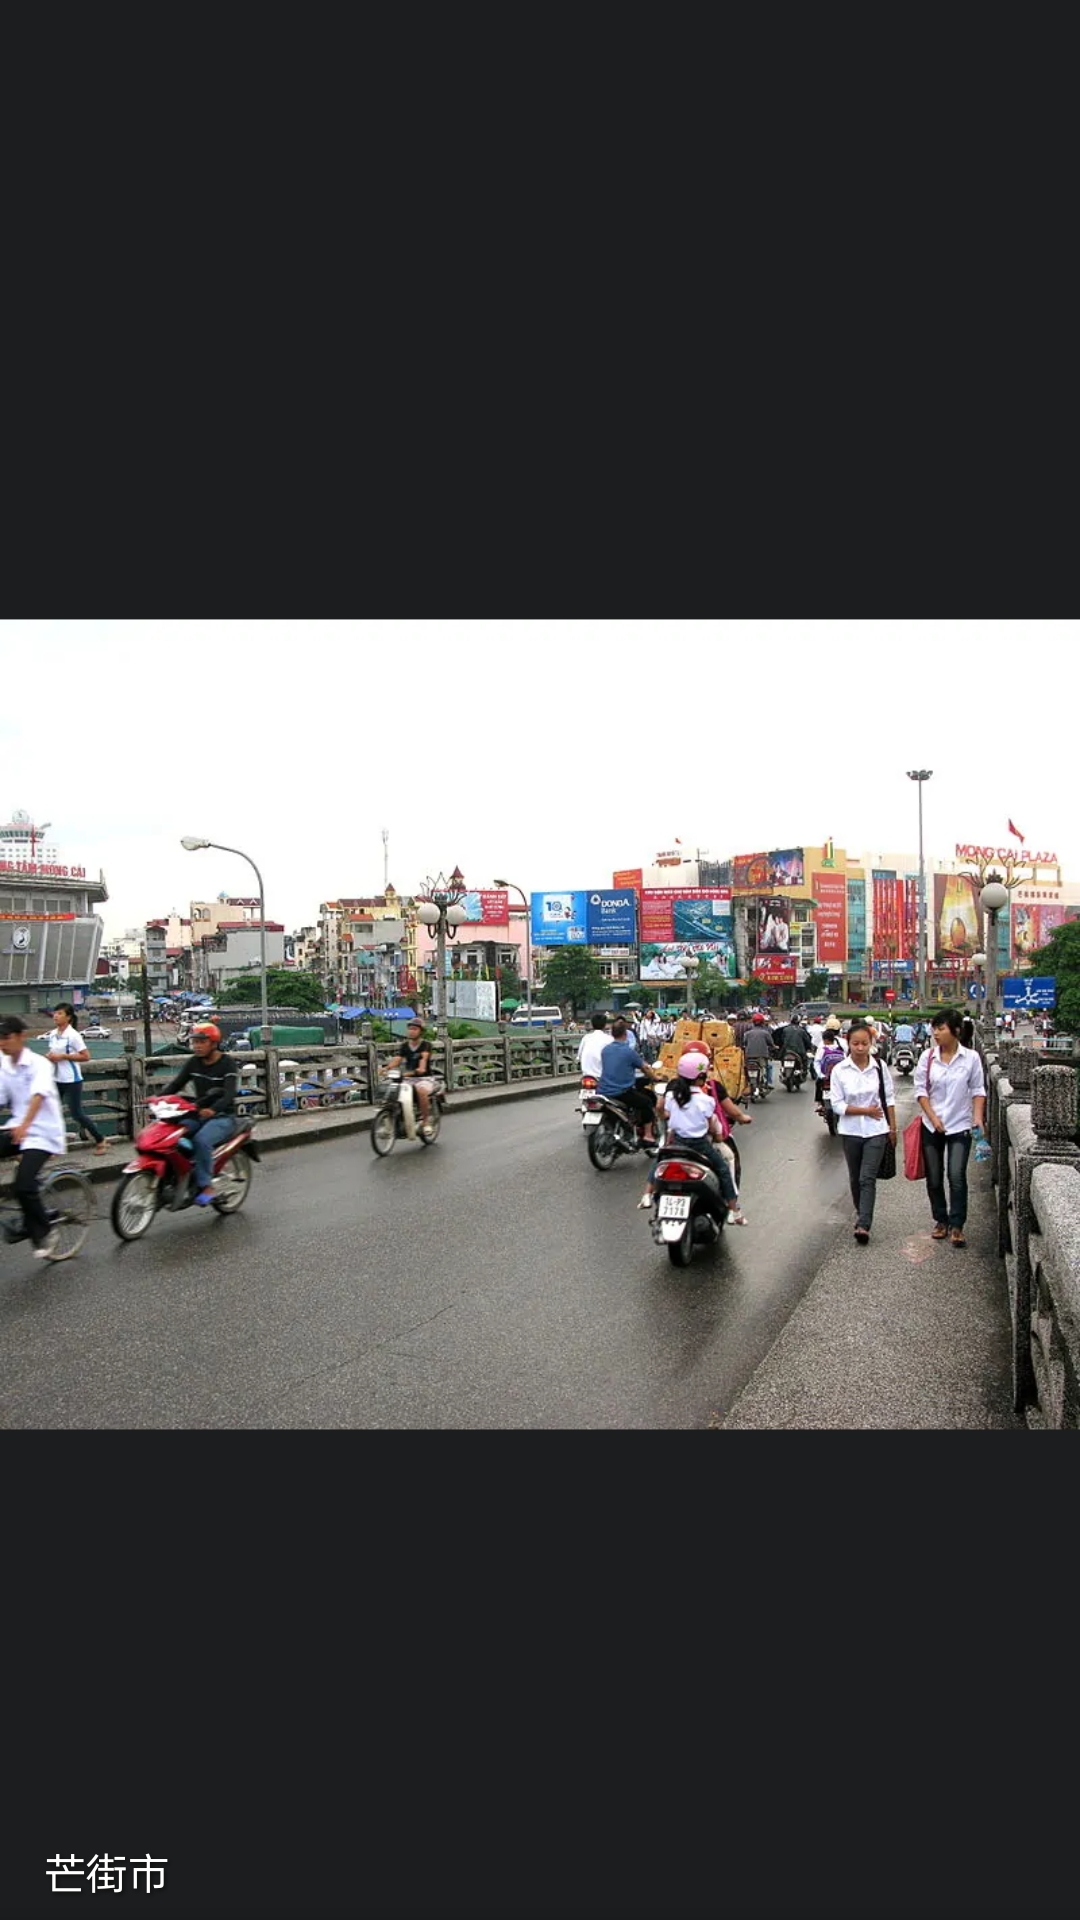 广宁省(Tỉnh Quảng Ninh)位于越南东北部、中越边境，东临北部湾，与中国广西防城港市接壤